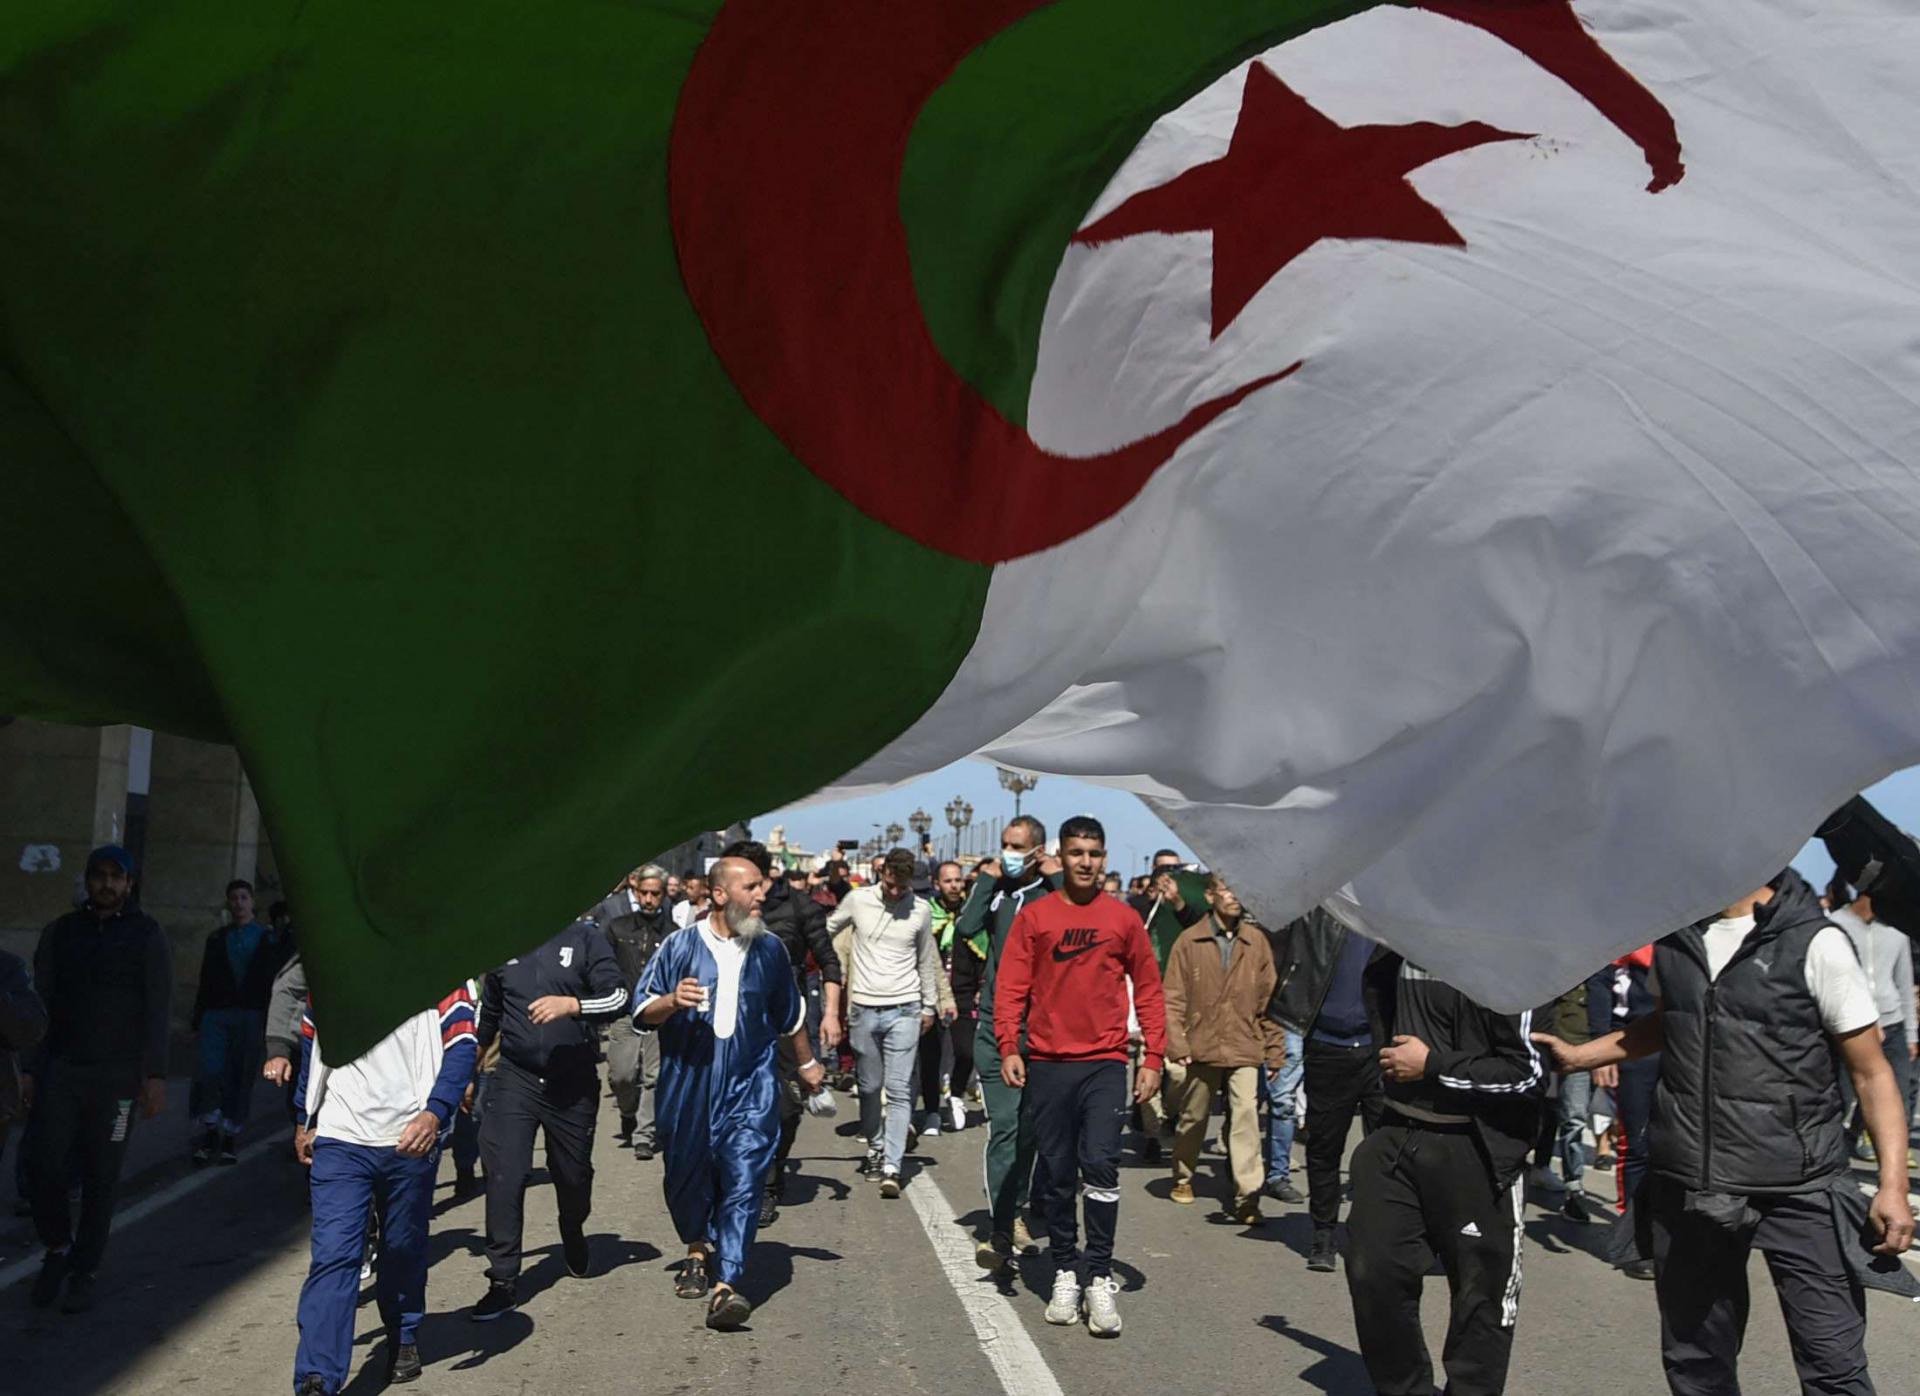 الحراك الشعبي في الجزائر يكسر حاجز القمع والترهيب